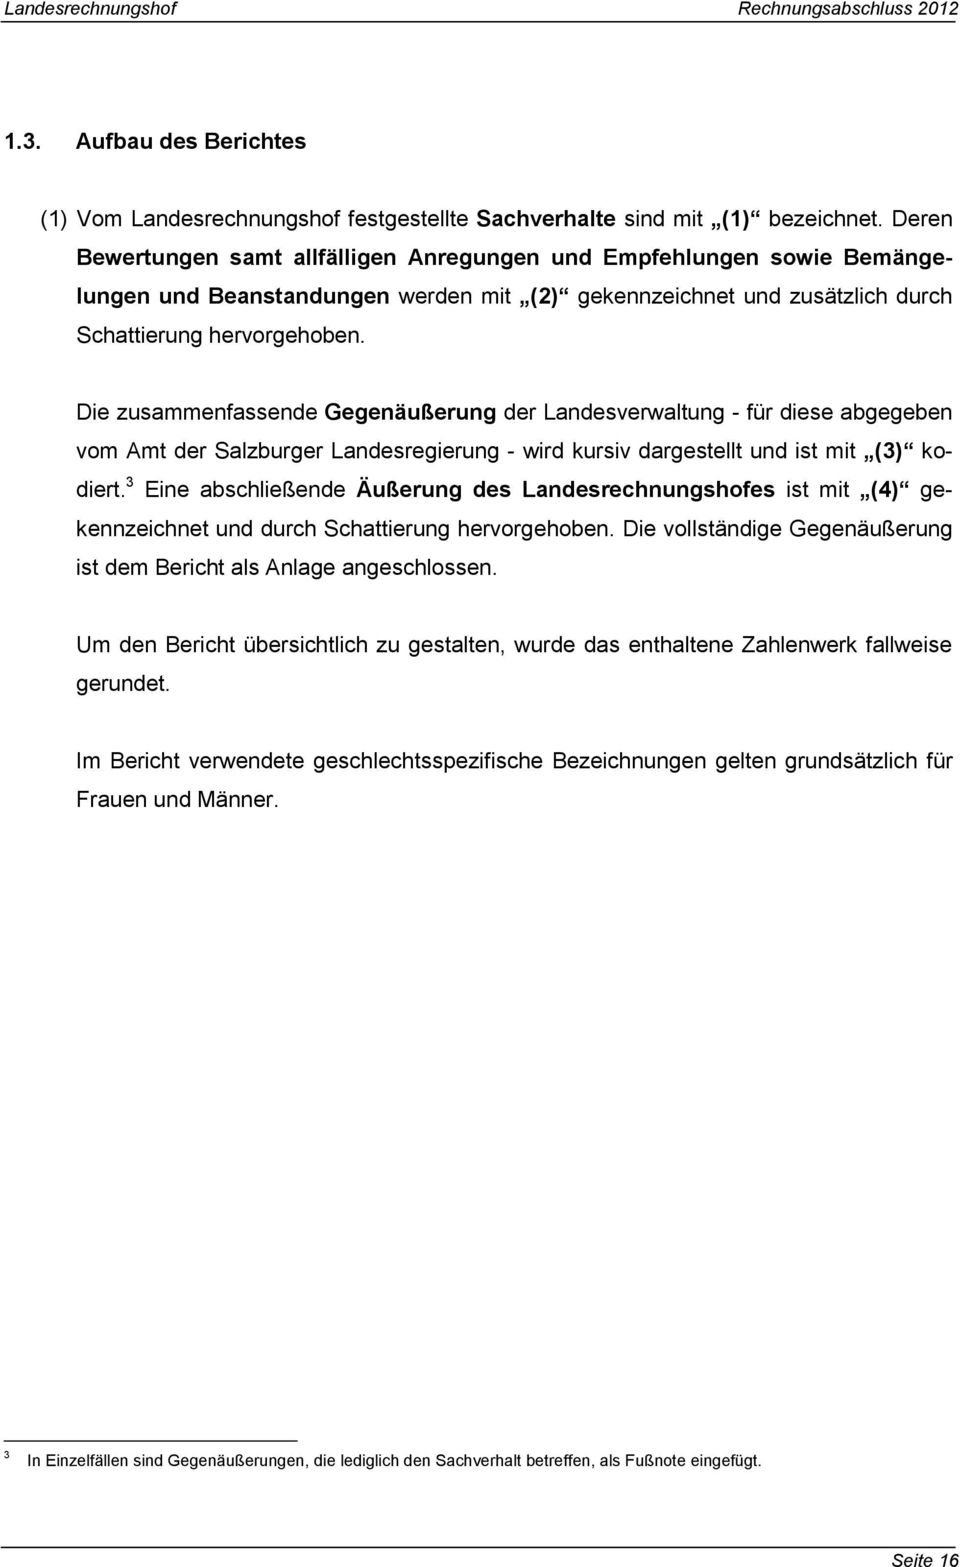 Die zusammenfassende Gegenäußerung der Landesverwaltung - für diese abgegeben vom Amt der Salzburger Landesregierung - wird kursiv dargestellt und ist mit (3) kodiert.